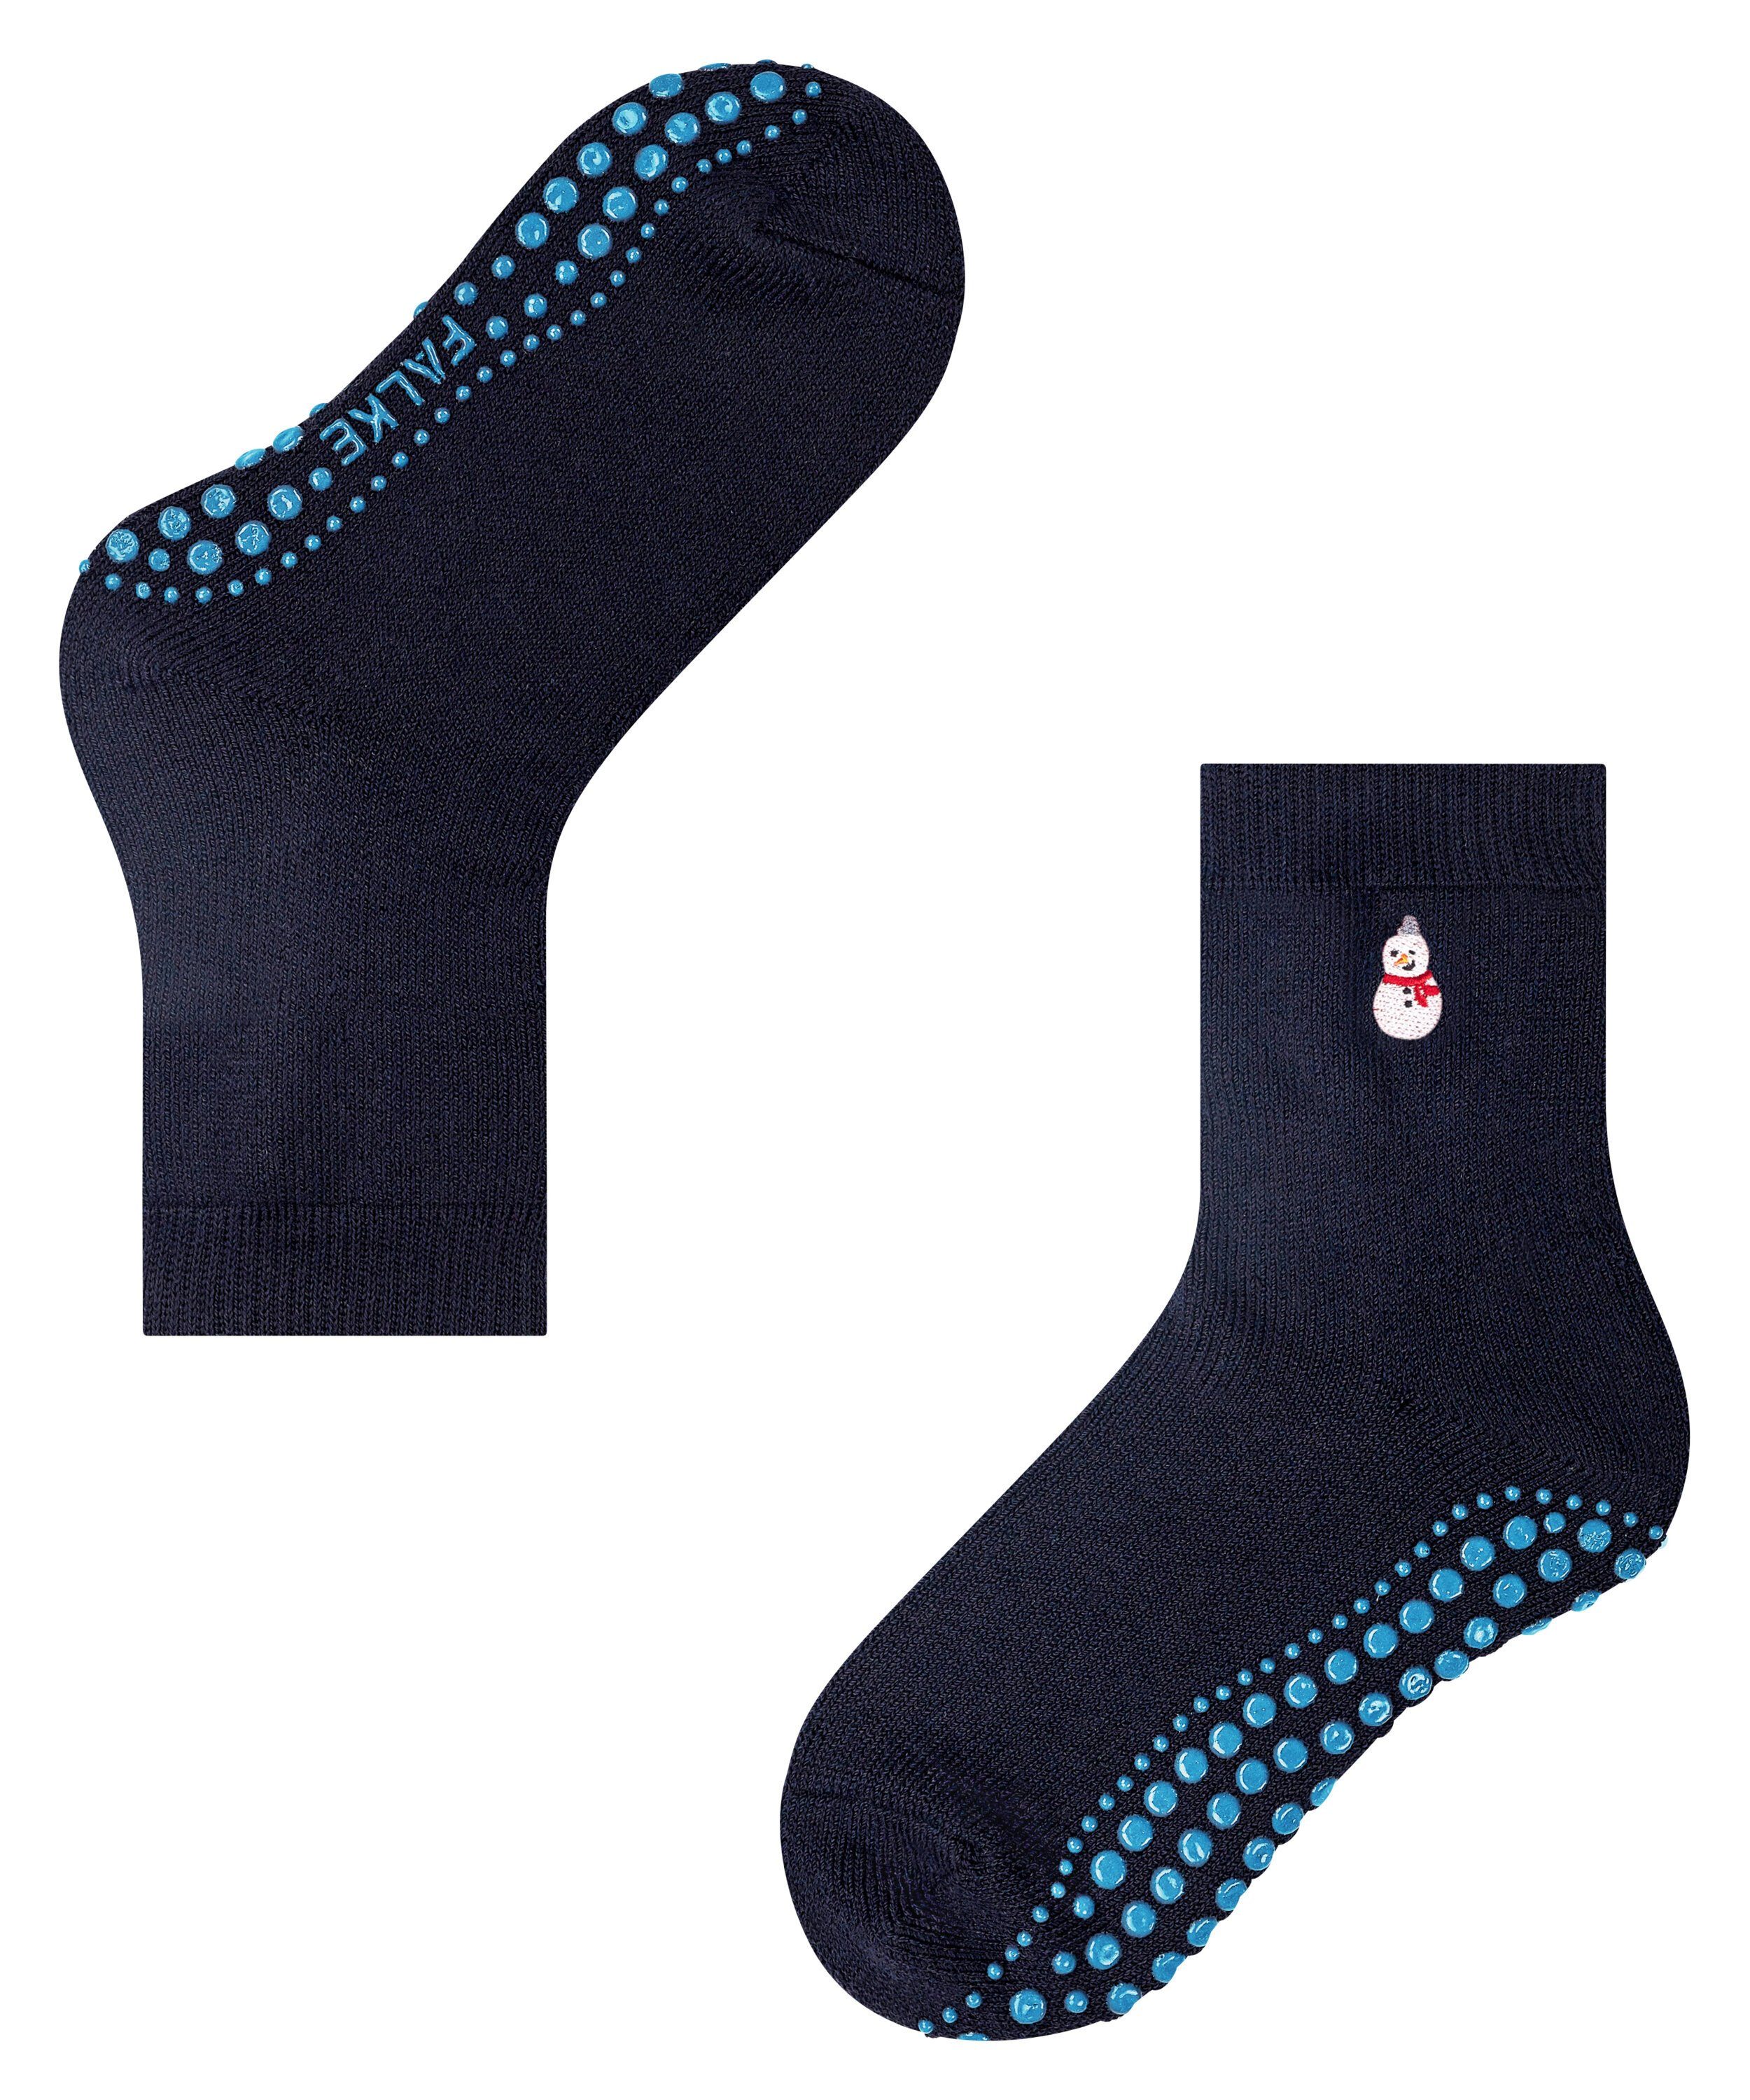 FALKE Socken Catspads Embroidery (1-Paar) (6370) navy dark